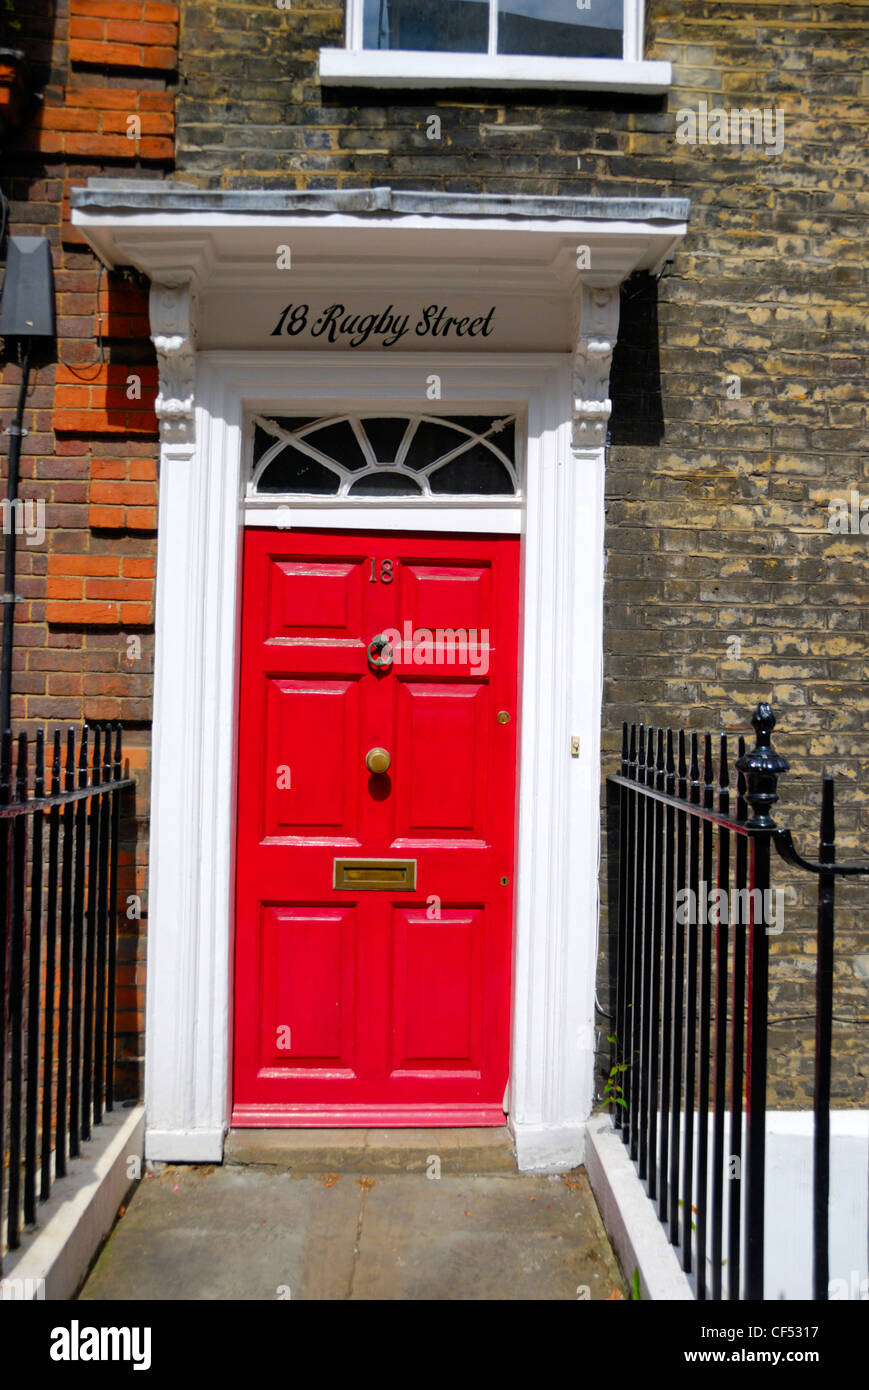 Numéro 18 Rugby Street WC1. '18 Rugby Street" était le nom d'un poème de Ted Hughes, rappelant l'époque Sylvia Plath lui a rendu visite Banque D'Images